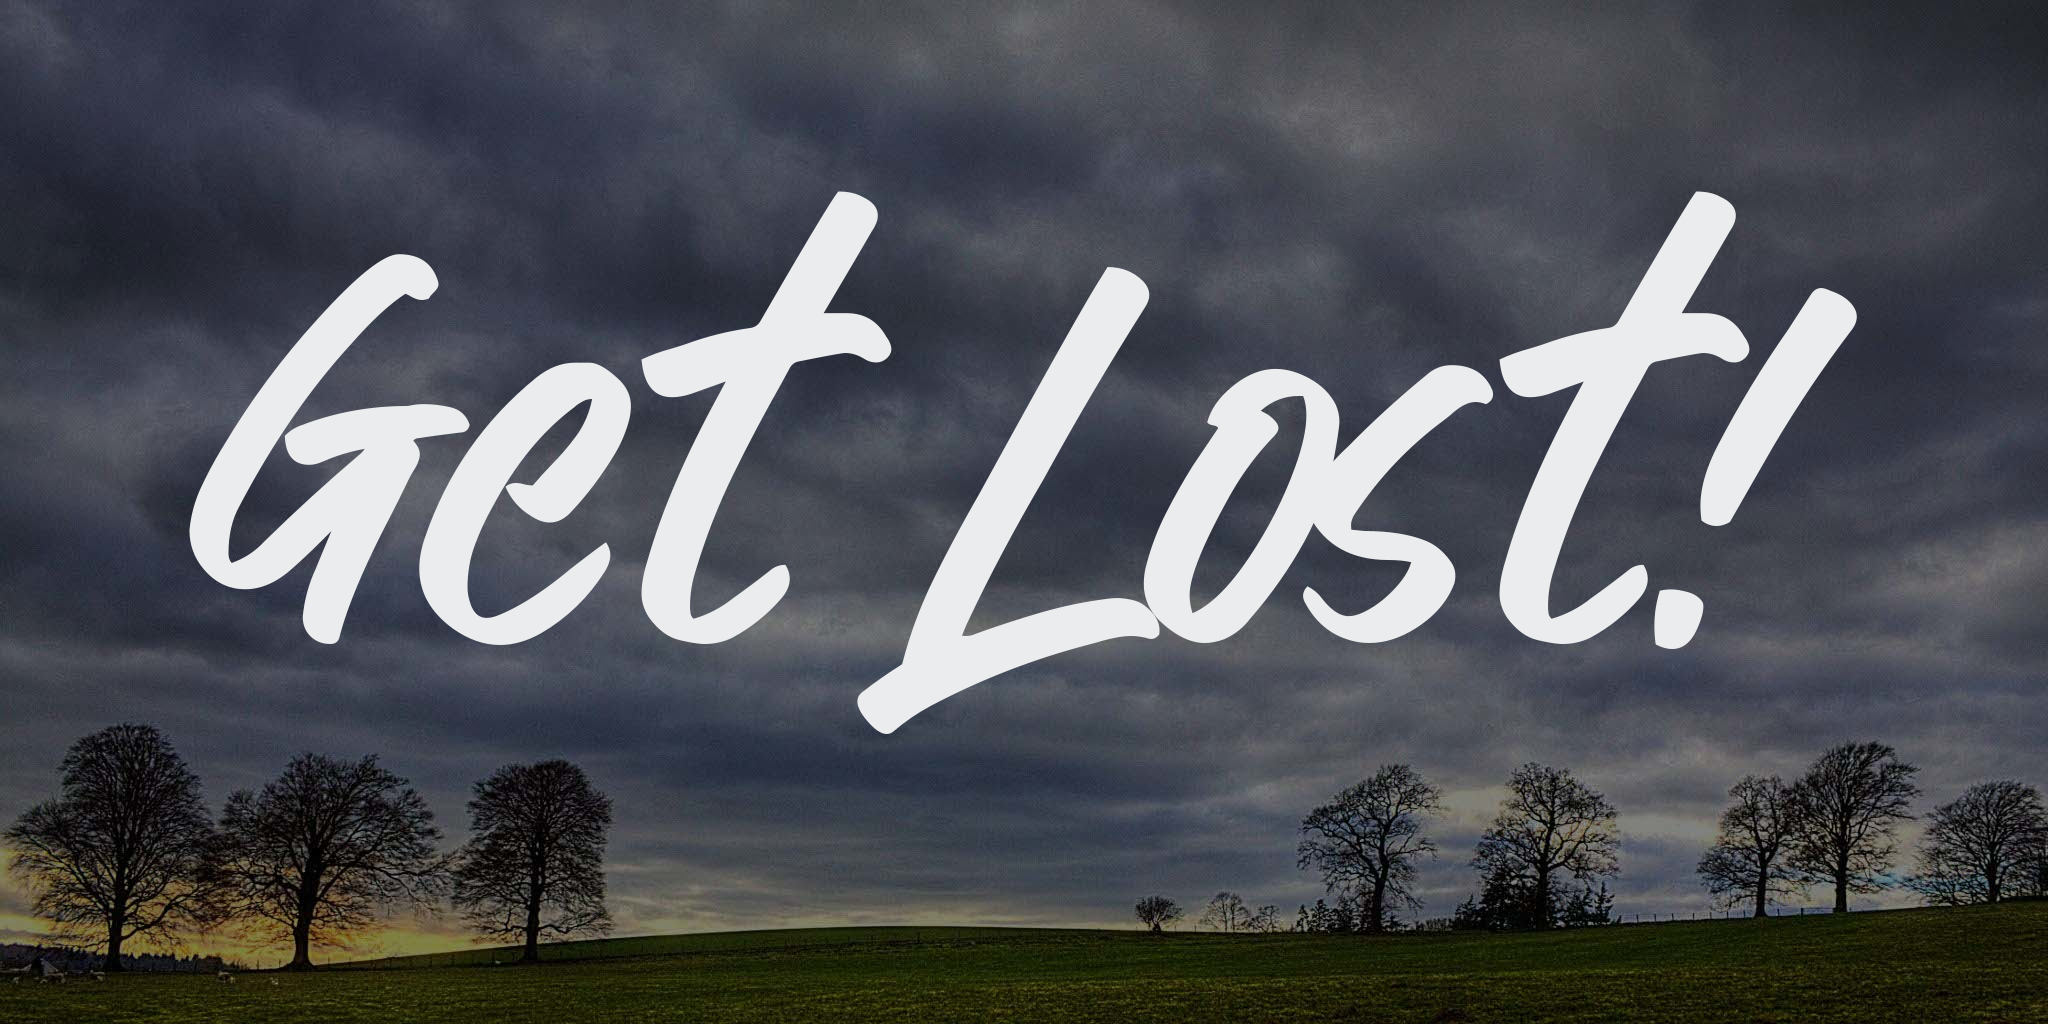 Get Lost!